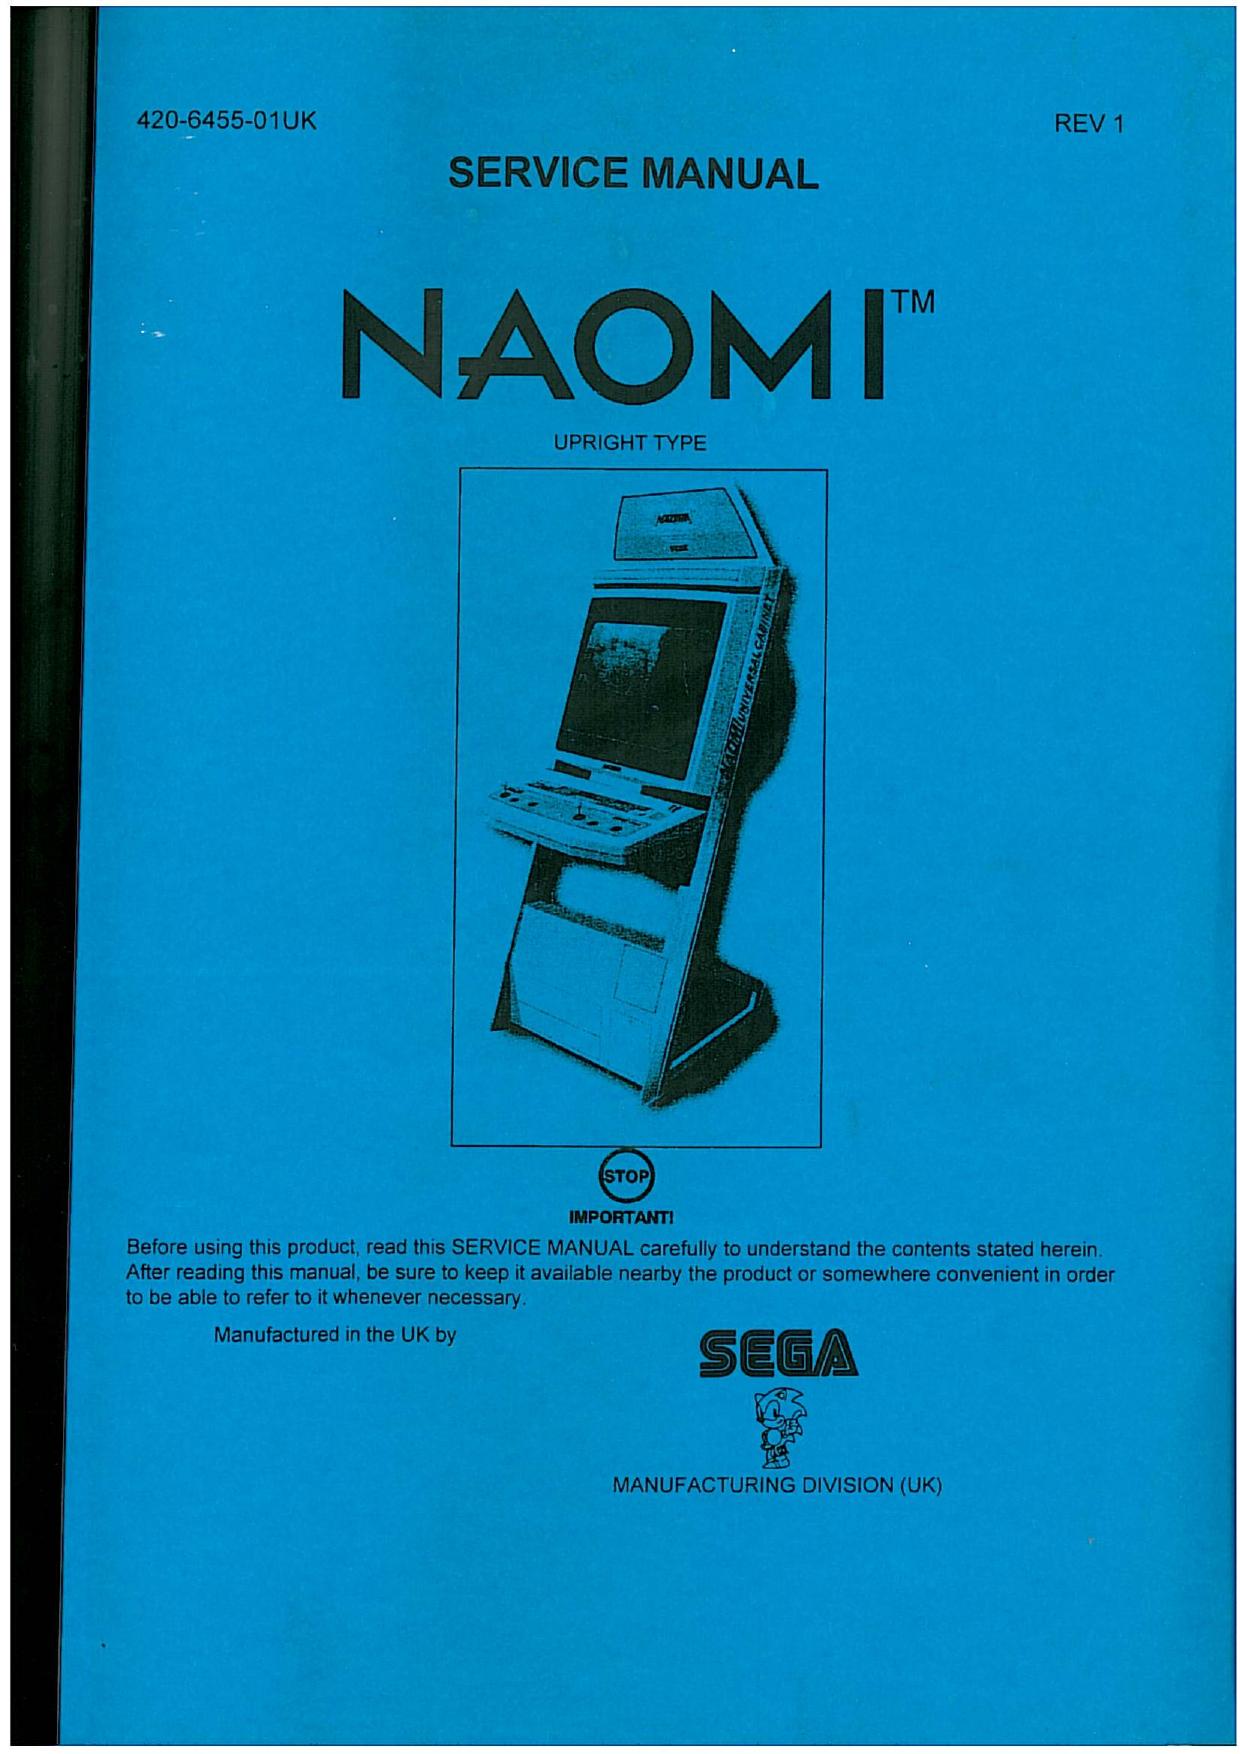 Naomi service manual 1